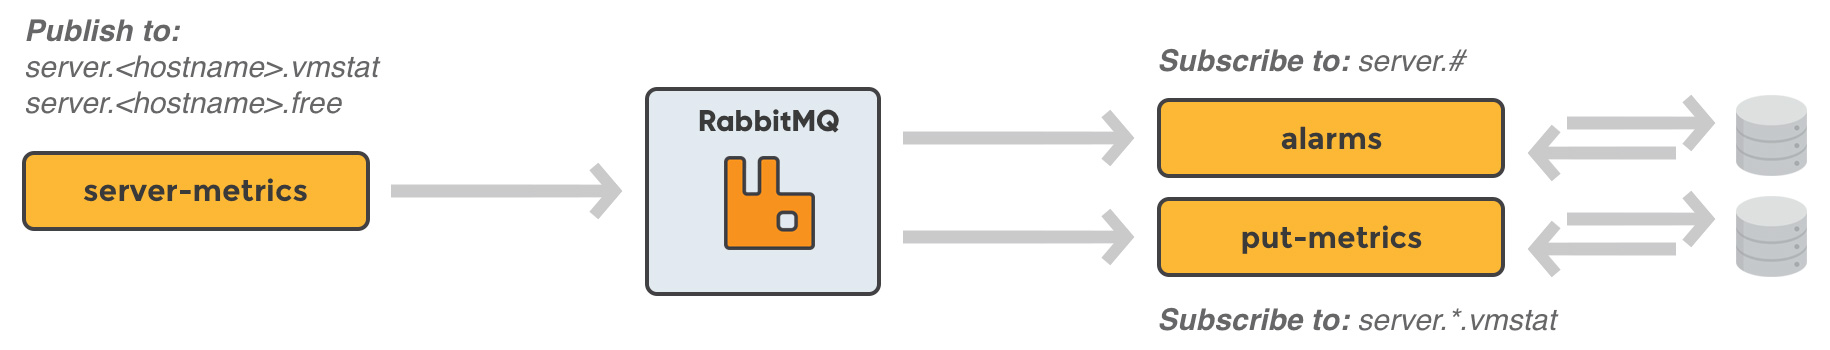 RabbitMQ Microservice Architecture